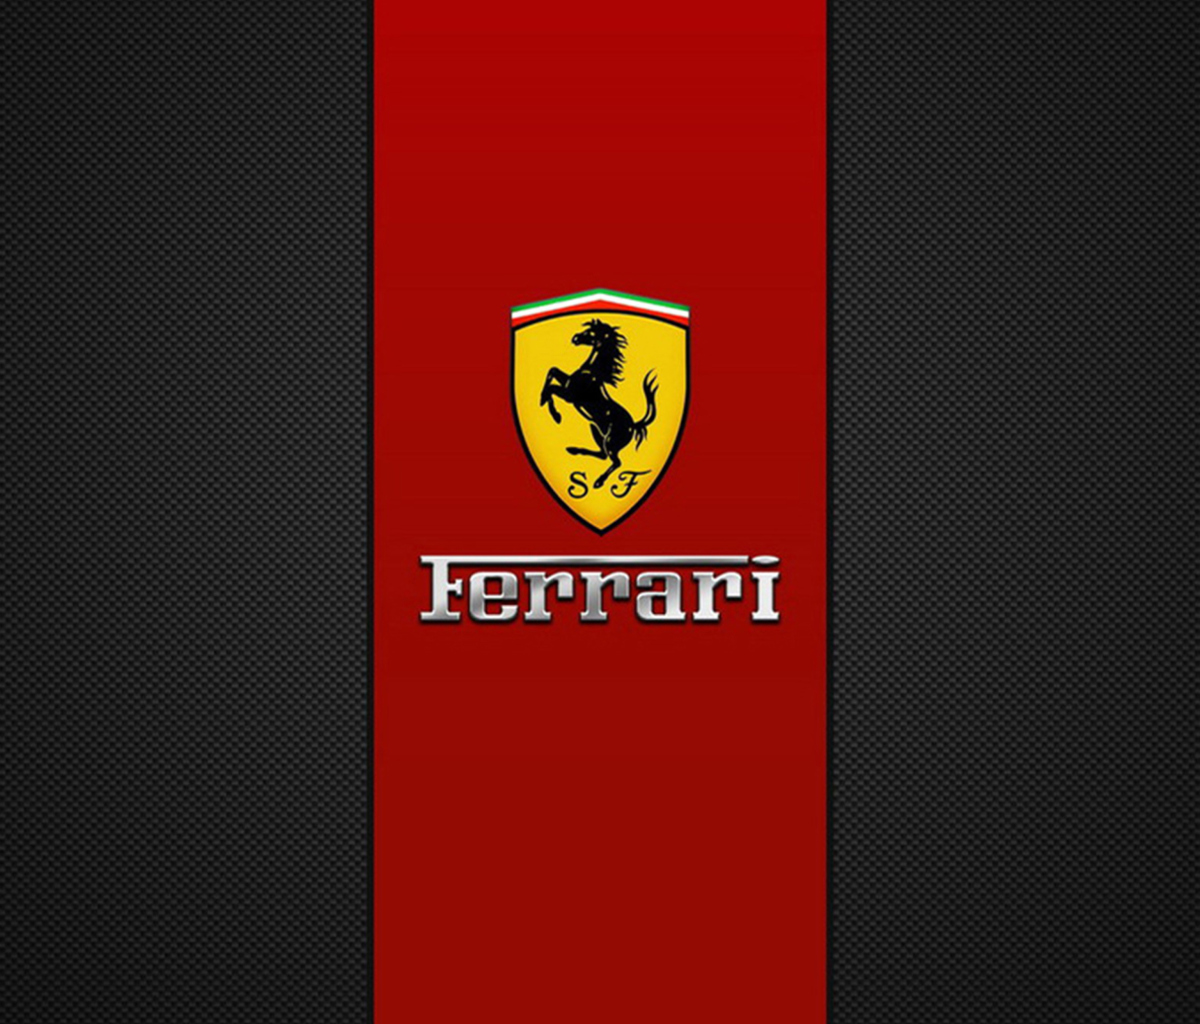 Ferrari Emblem wallpaper 1200x1024